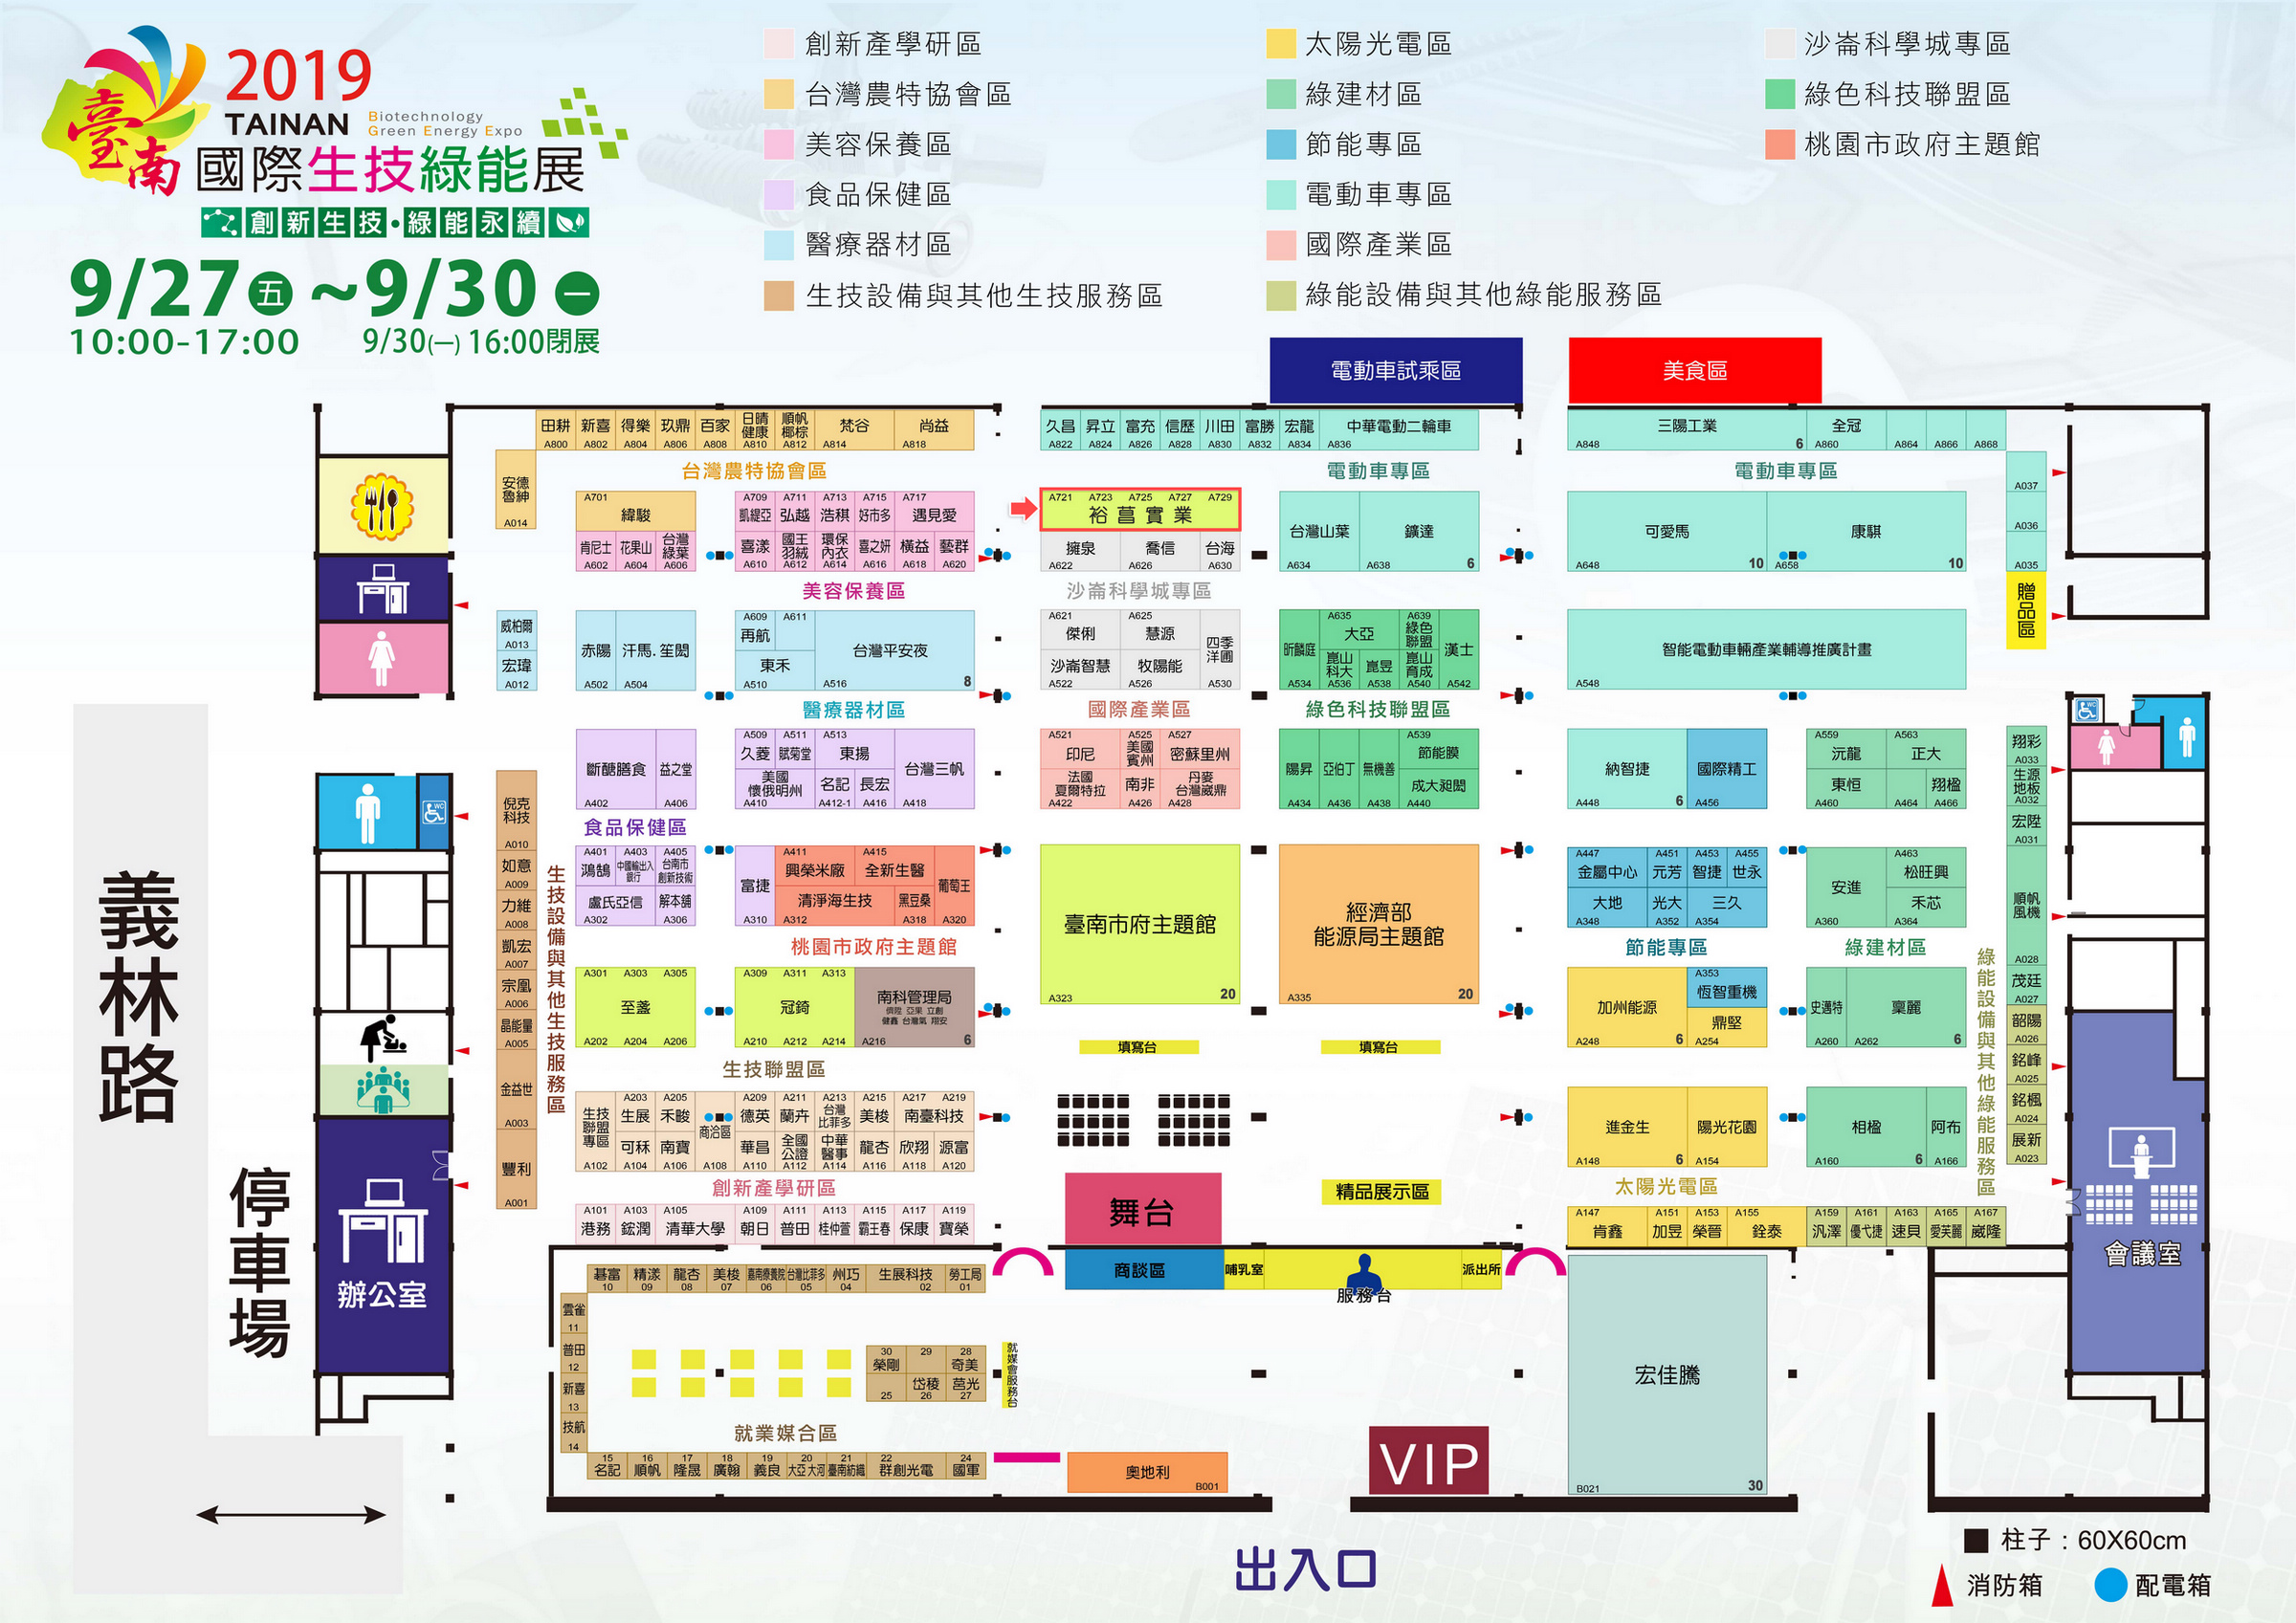 2019-台南国际生技绿能展